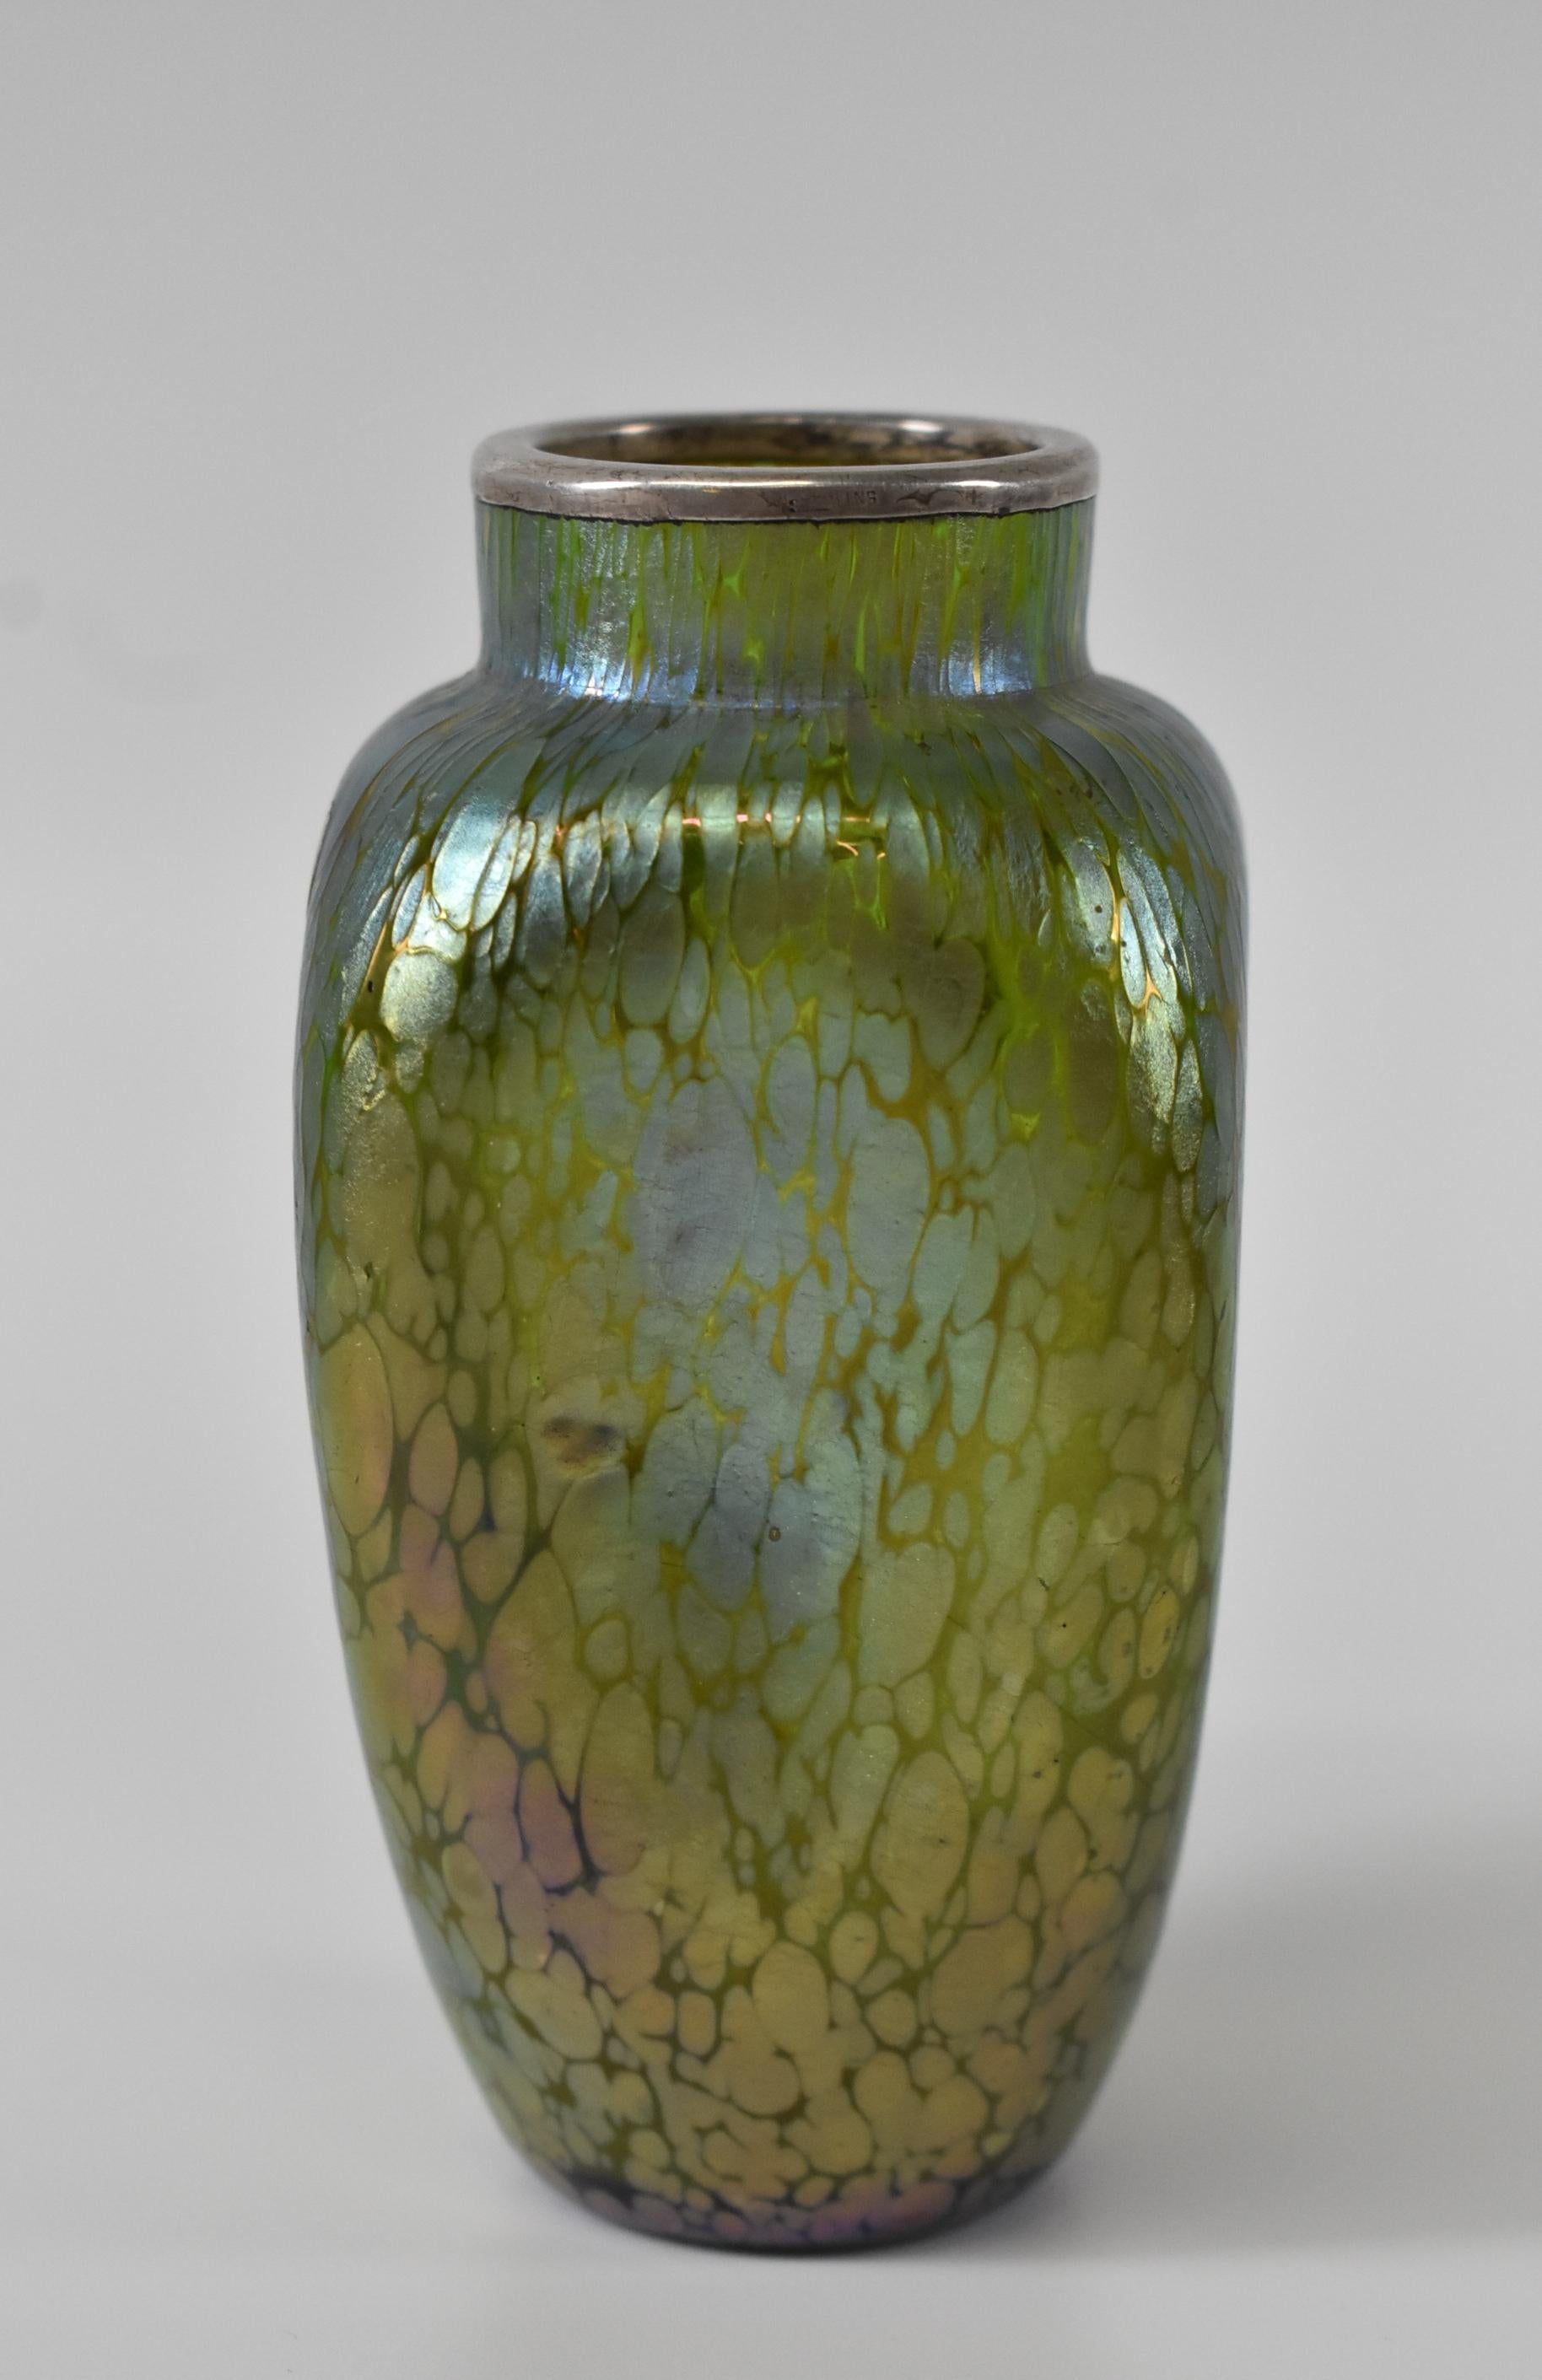 Österreichische Loetz-Vase aus irisierendem Kunstglas in Papillon-Finish mit aufgelegtem Sterlingsilber. Art Nouveau-Stil in einer Grübchenform Schattierungen von grün blau und lila. Sehr guter Zustand. Abmessungen: 2.25